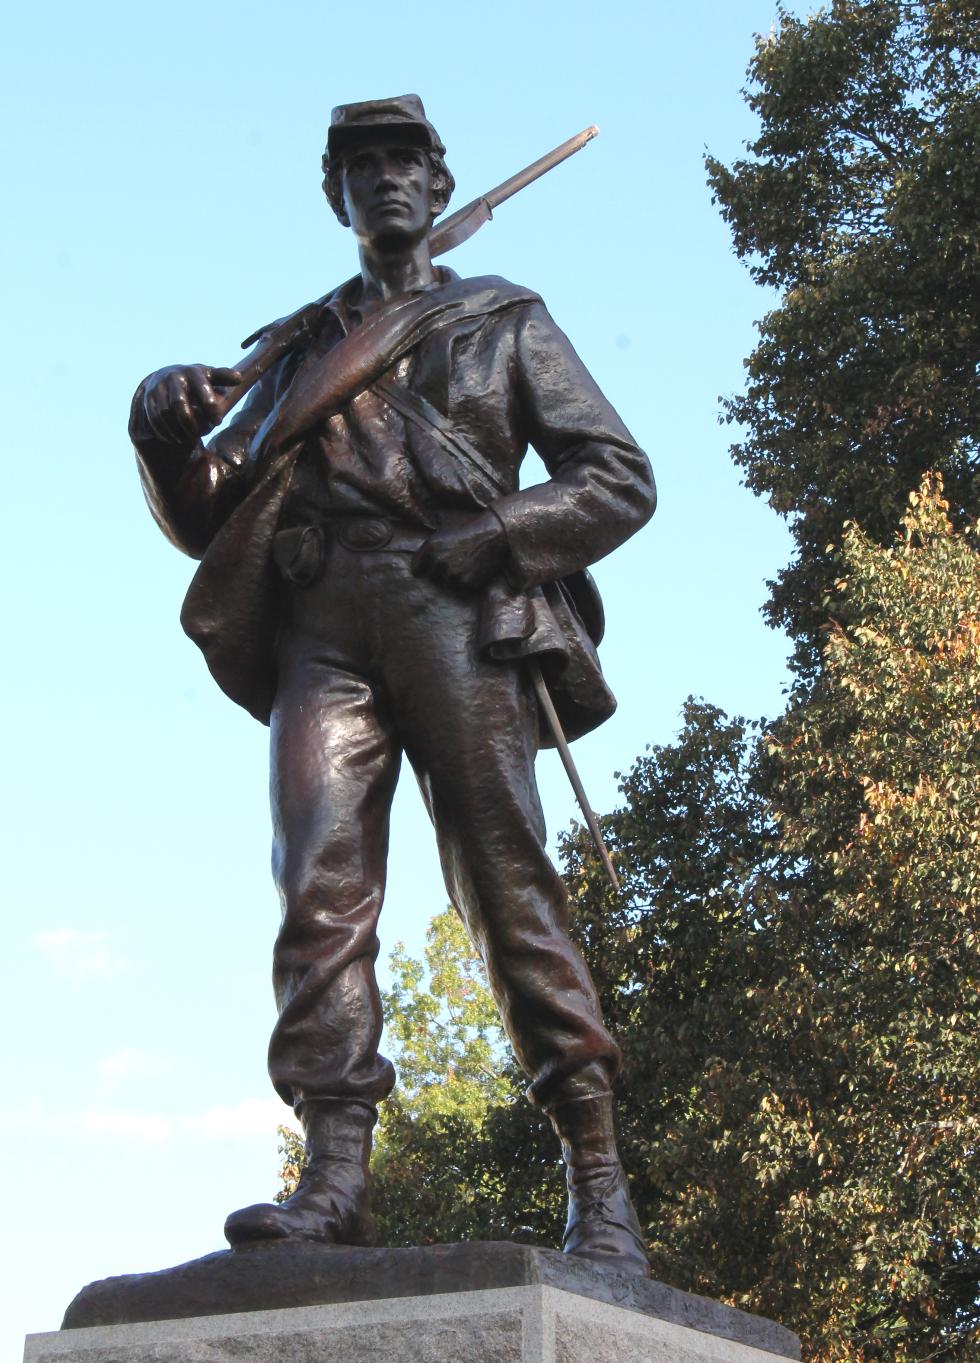 Townsend Massachusetts Civil War Veterans Memorial